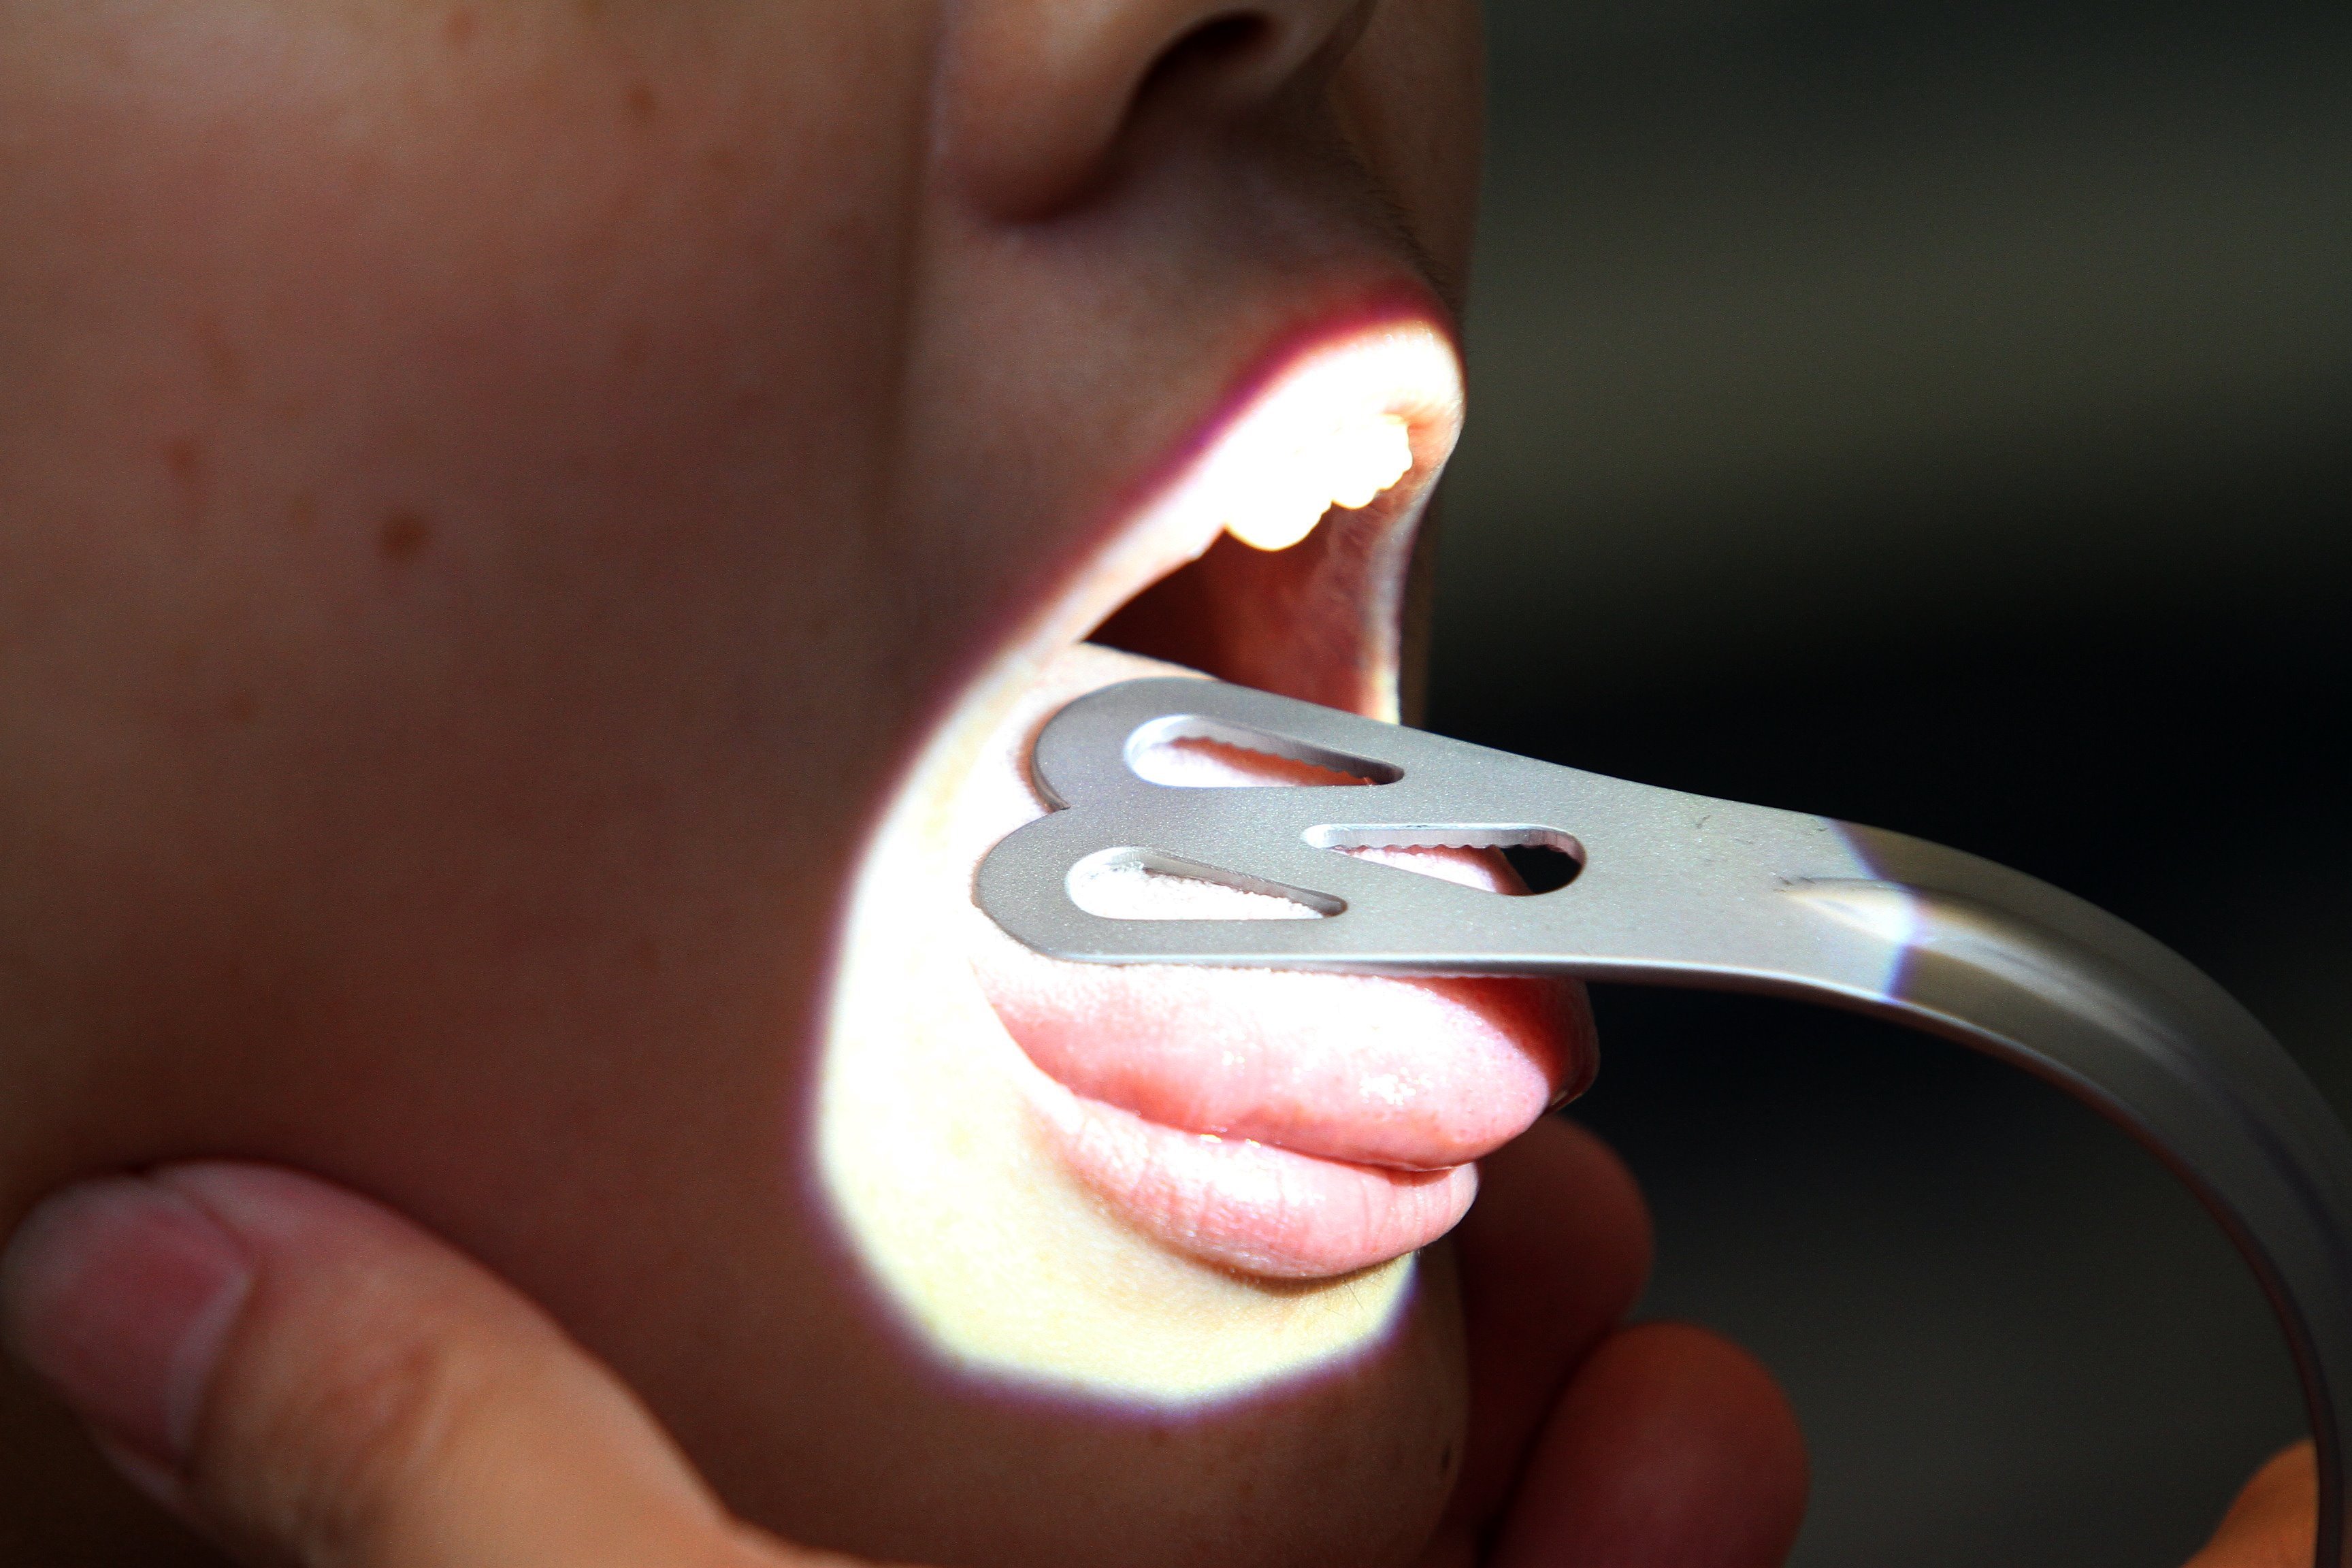 口交或增罹患机率 舌癌患者年轻化 地方 大北马 星洲网sin Chew Daily